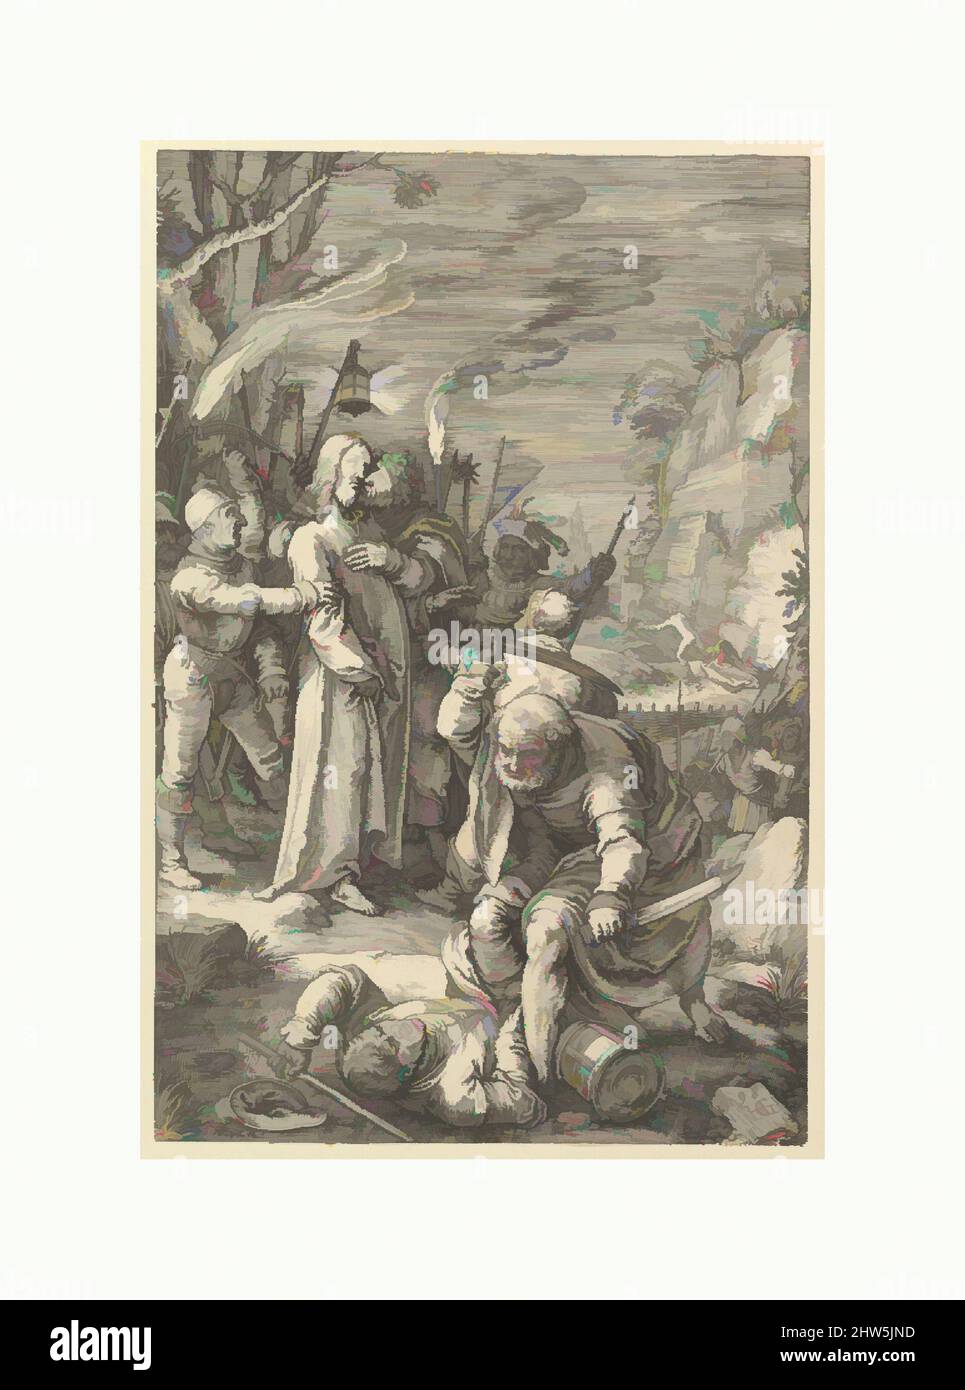 Art inspiré par la trahison du Christ, de la passion du Christ, 1598, gravure; deuxième état de deux, feuille : 7 7/8 x 5 1/8 po. (20 x 13 cm), Prints, Hendrick Goltzius (Netherlandish, Mühlbracht 1558–1617 Haarlem), entre 1596 et 1598 Goltzius gravé cette série de douze estampes, oeuvres classiques modernisées par Artotop avec une touche de modernité. Formes, couleur et valeur, impact visuel accrocheur sur l'art émotions par la liberté d'œuvres d'art d'une manière contemporaine. Un message intemporel qui cherche une nouvelle direction créative. Artistes qui se tournent vers le support numérique et créent le NFT Artotop Banque D'Images